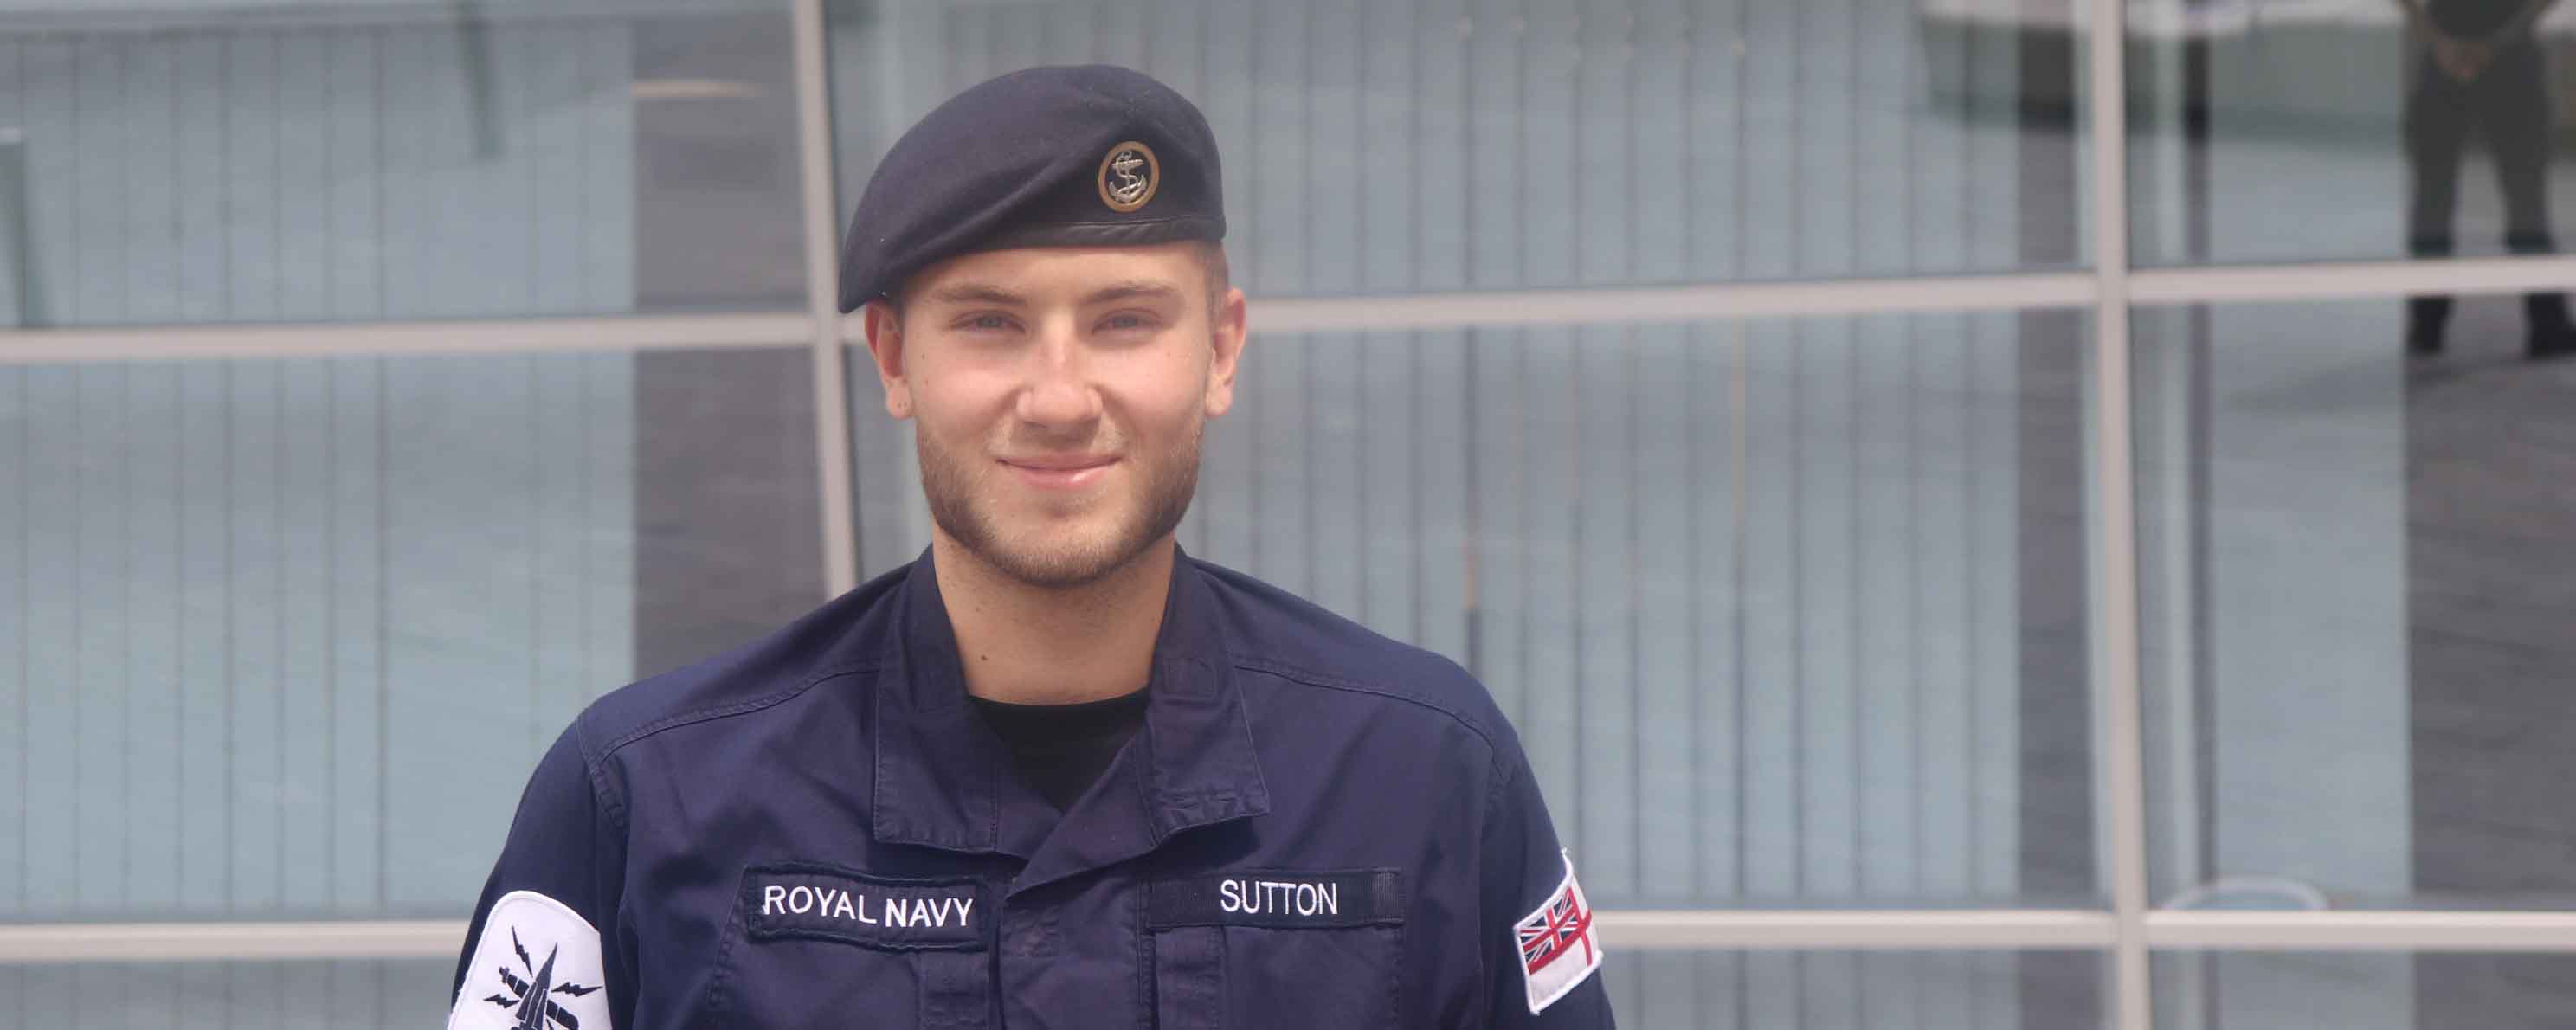 Royal Navy representative, male, facing